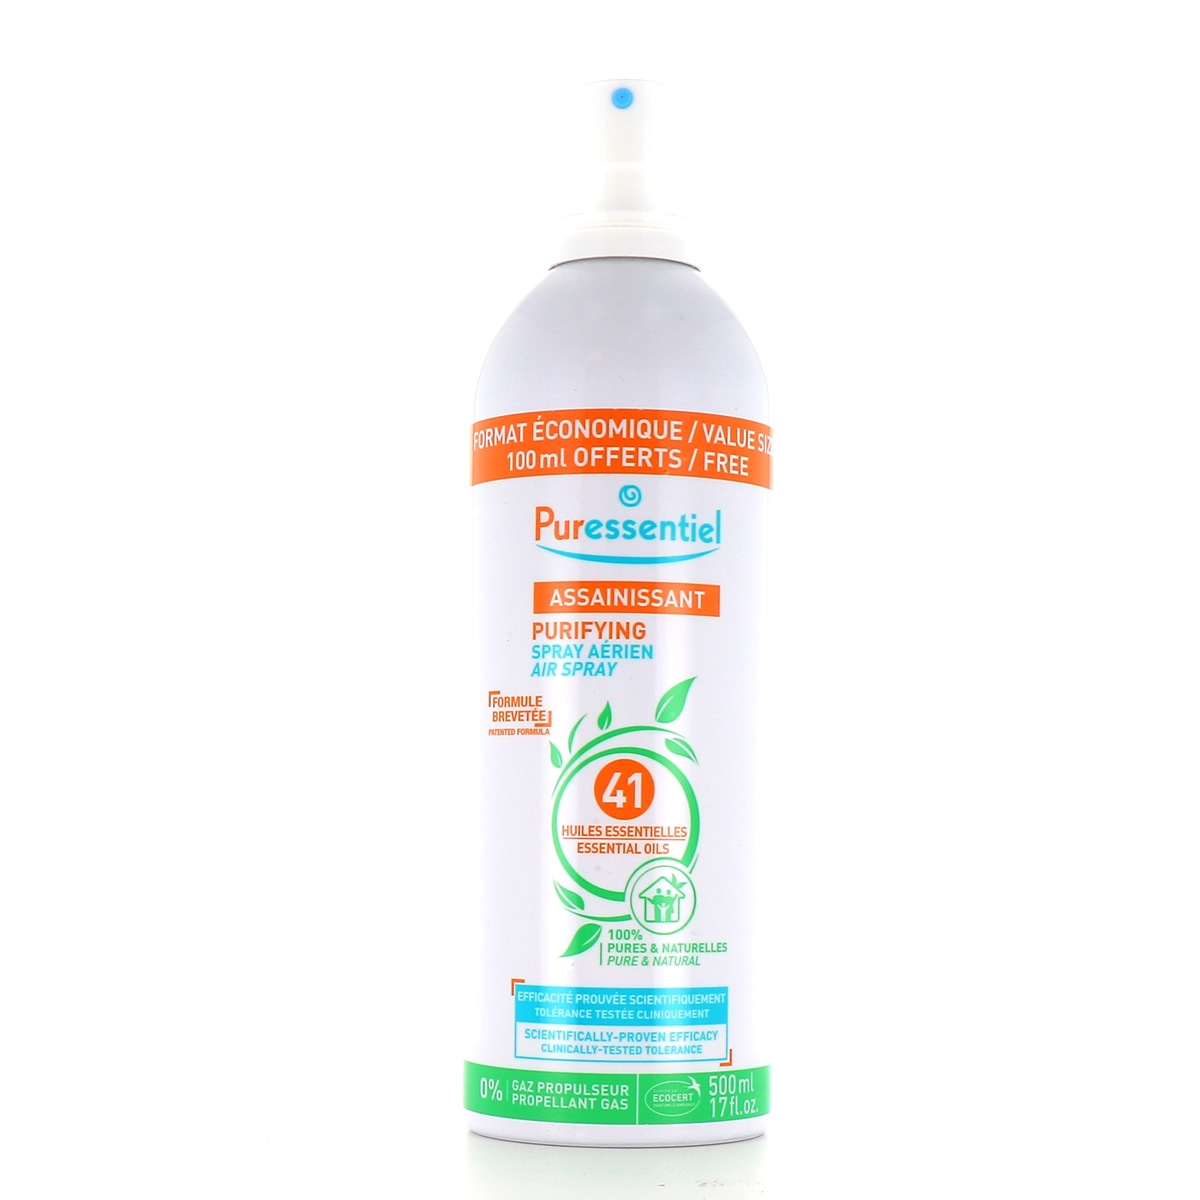 Puressentiel Assainissant Spray Aerien 200ml+Gel Antibacterien